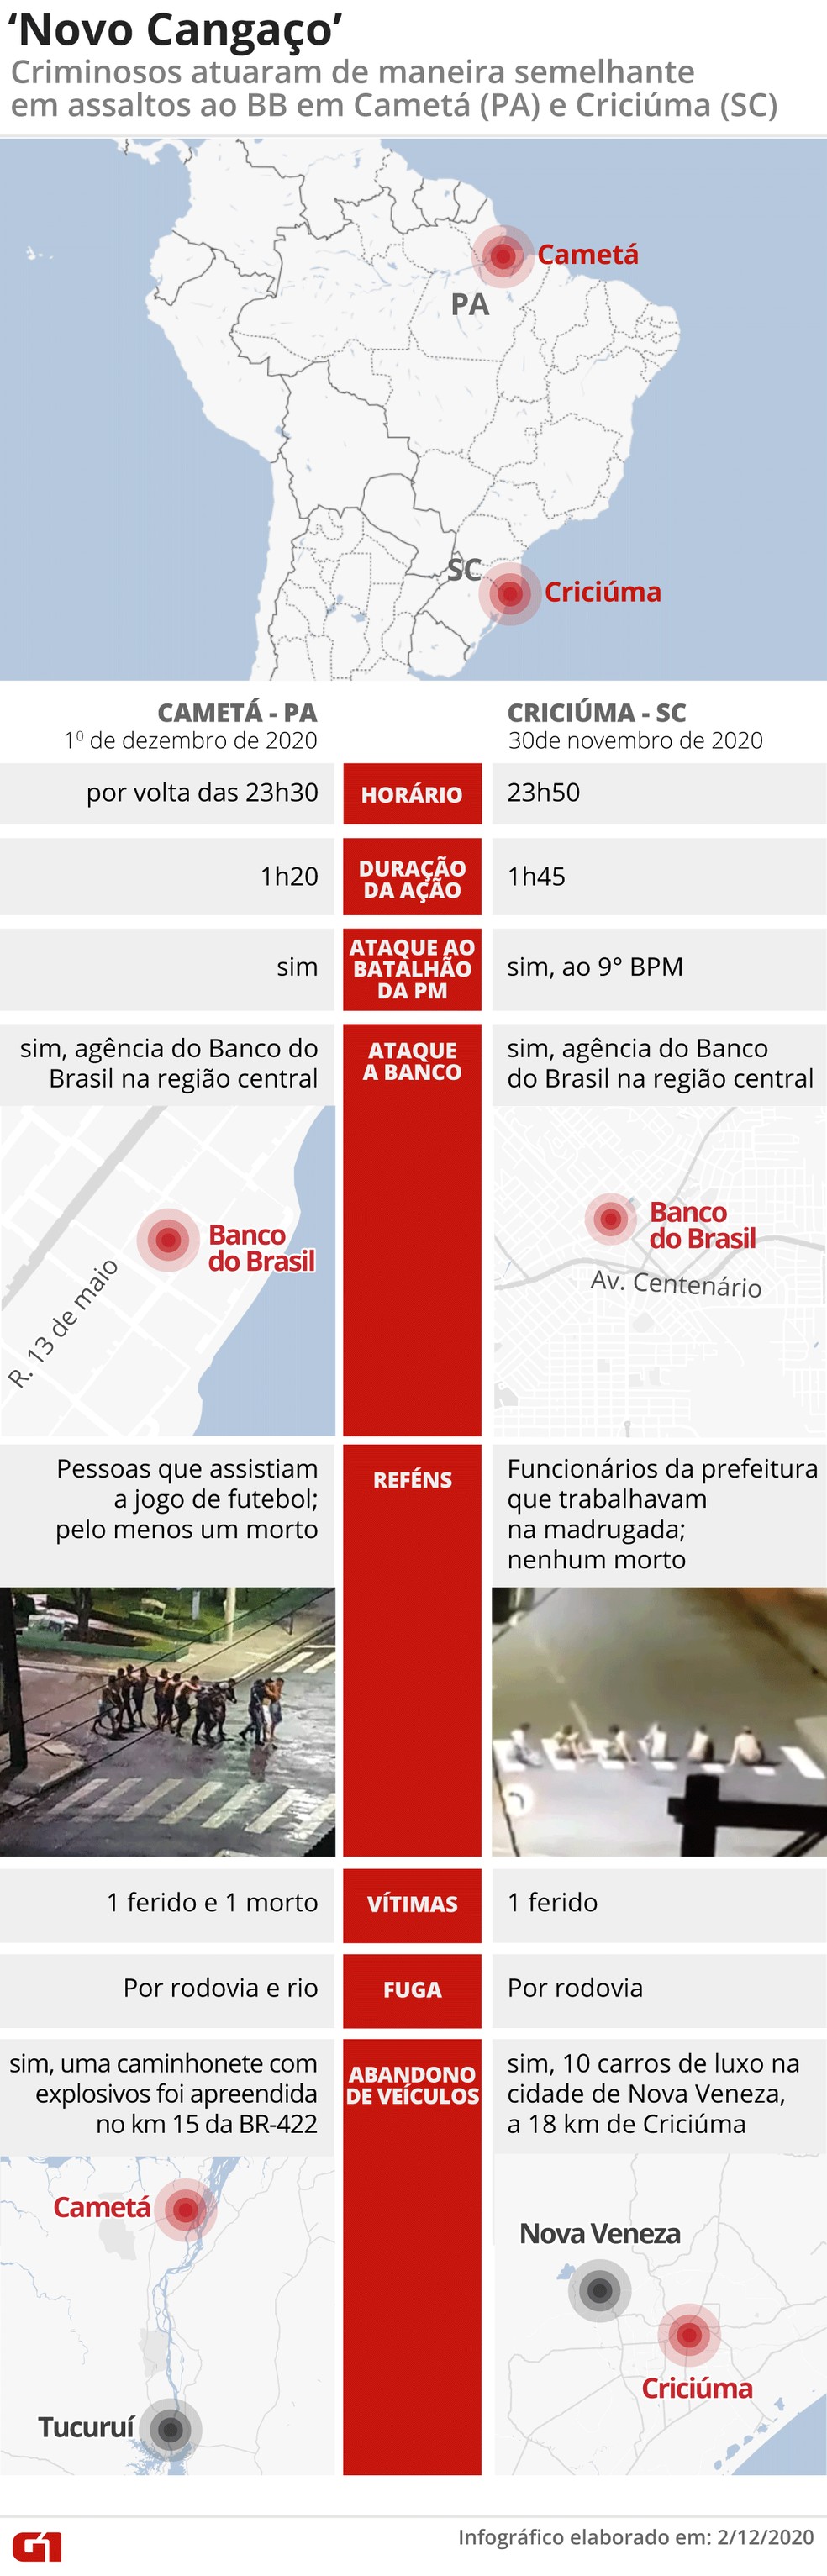 Infográfico compara os assaltos em Cametá (PA) e Criciúma (PR) — Foto: Fernanda Garrafiel/G1